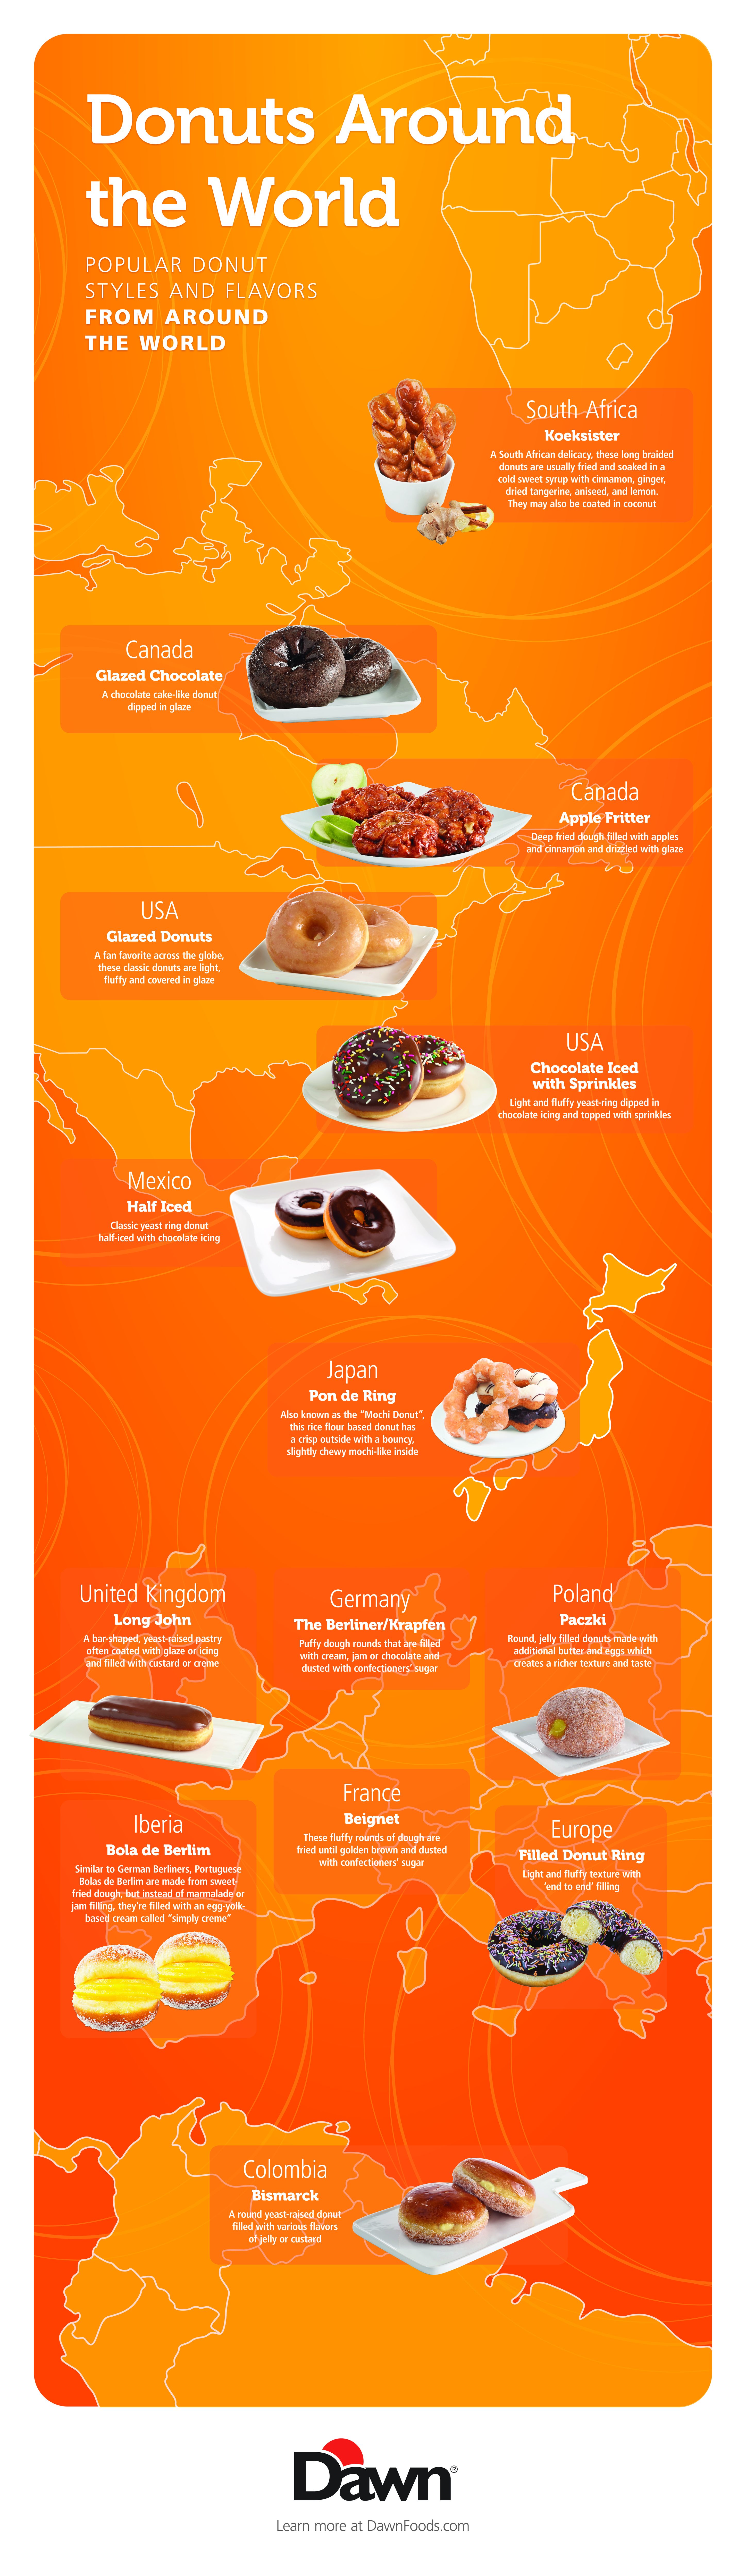 Donuts around the world